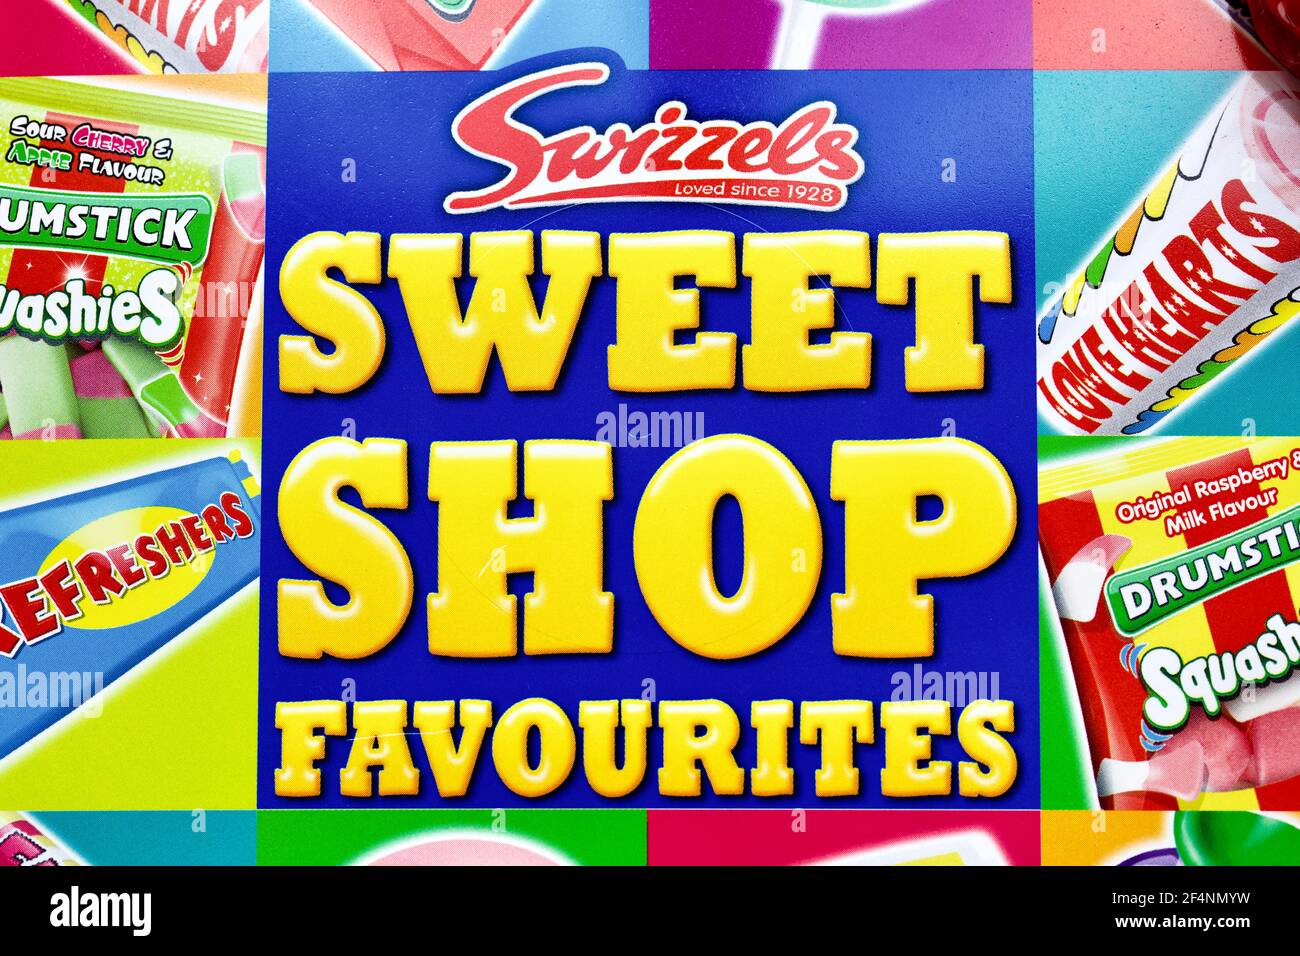 Swizzels Sweet Shop favorites Banque D'Images